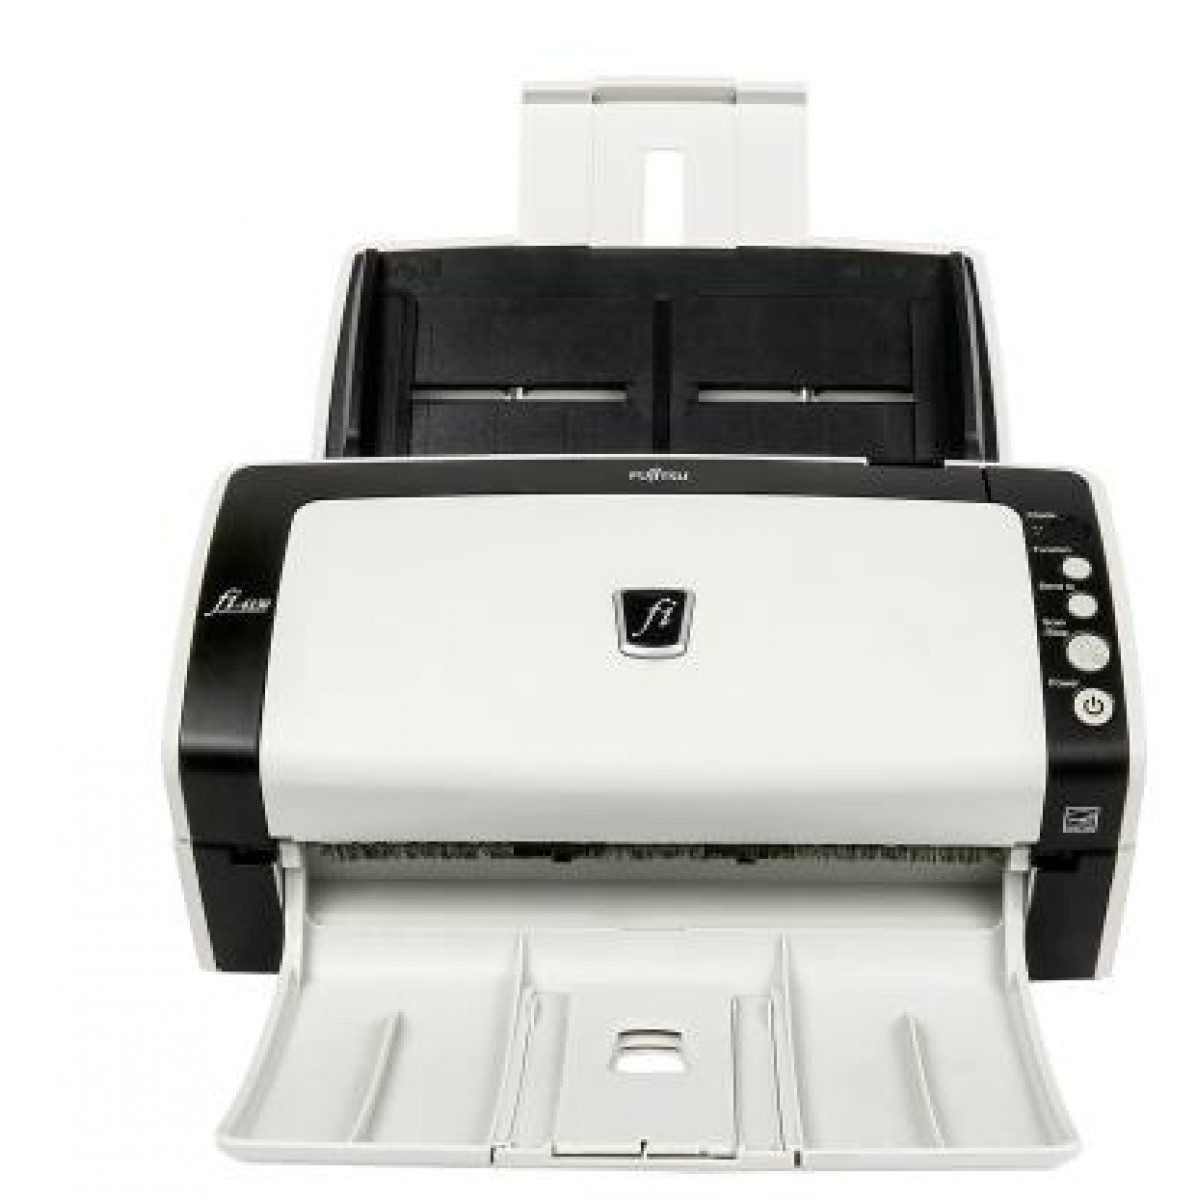 富士通fi-6130z扫描仪连续扫描高速双面彩色快速全自动小型扫描机